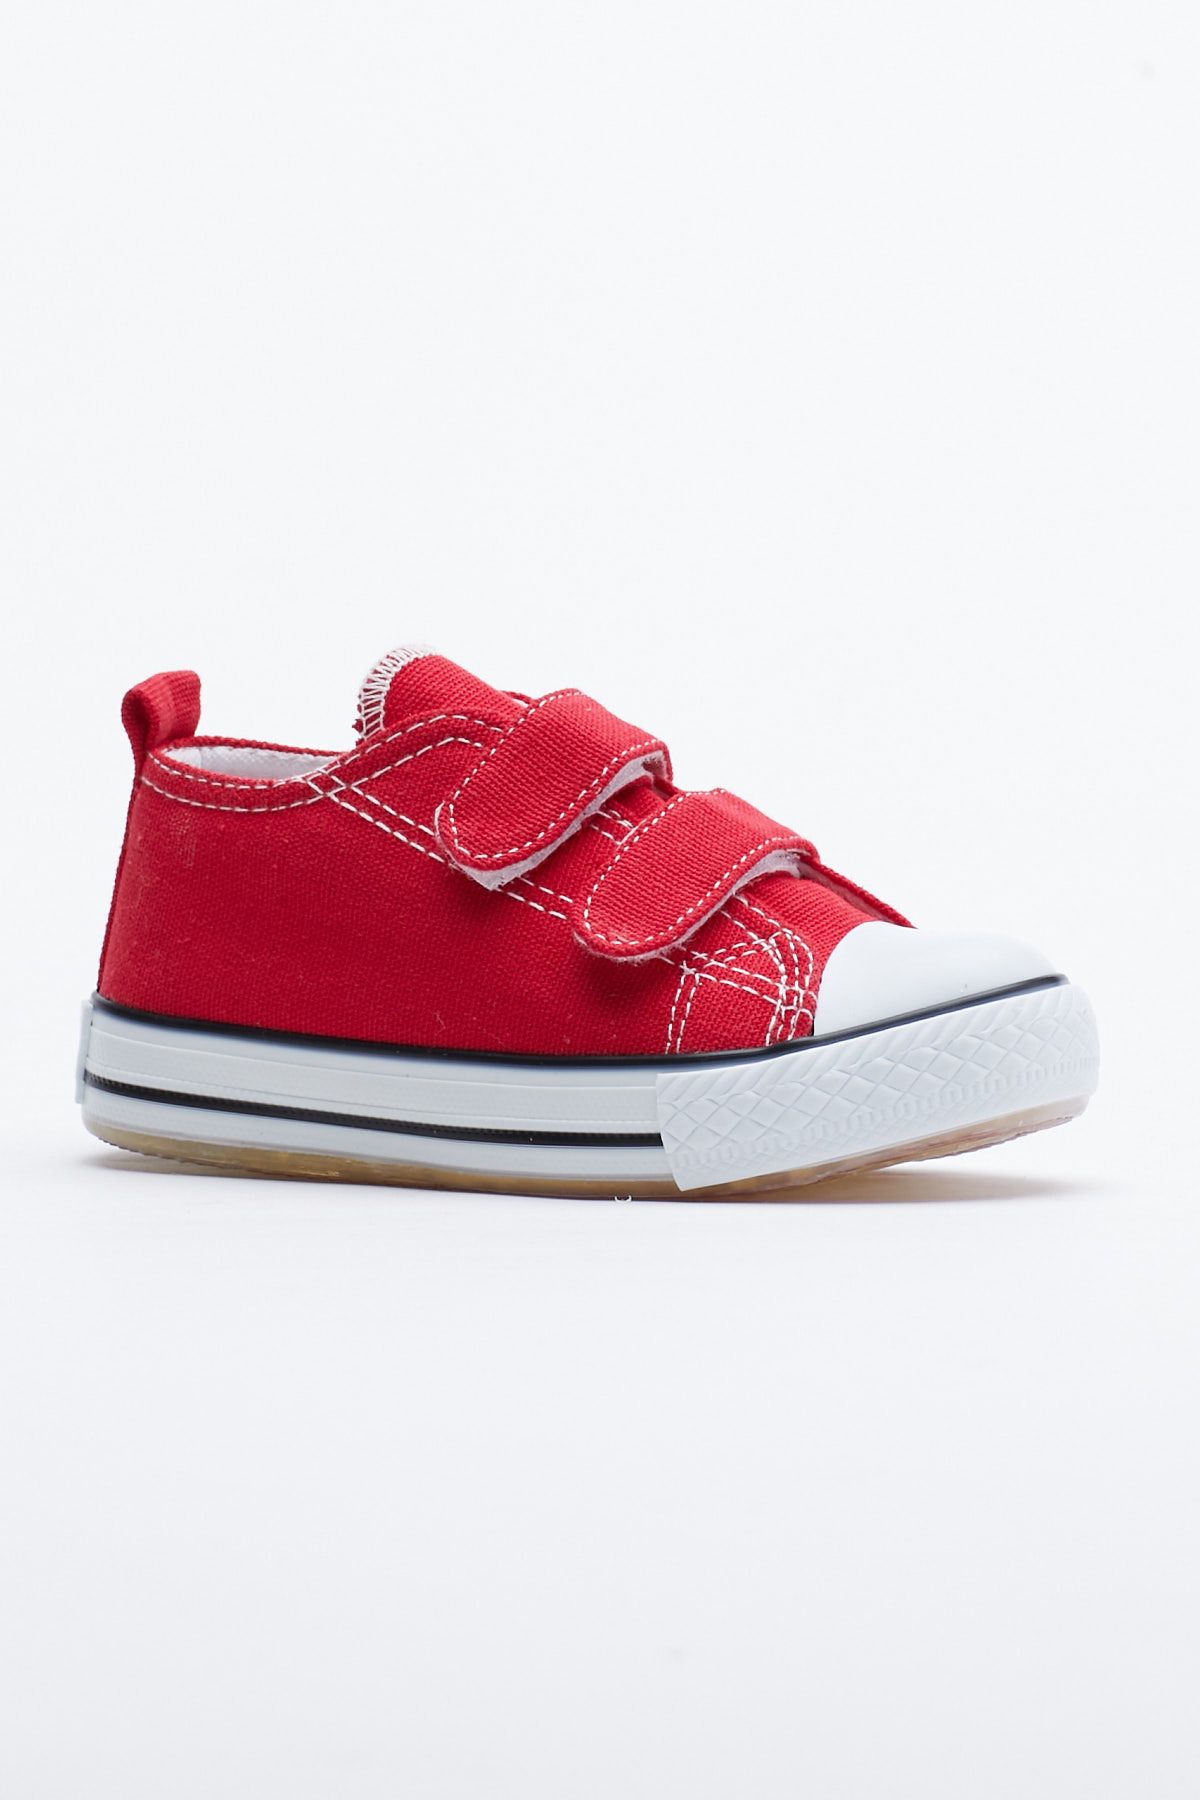 Tonny Black Çocuk Unisex Kırmızı Işıklı Cırtlı Spor Ayakkabı Tb997